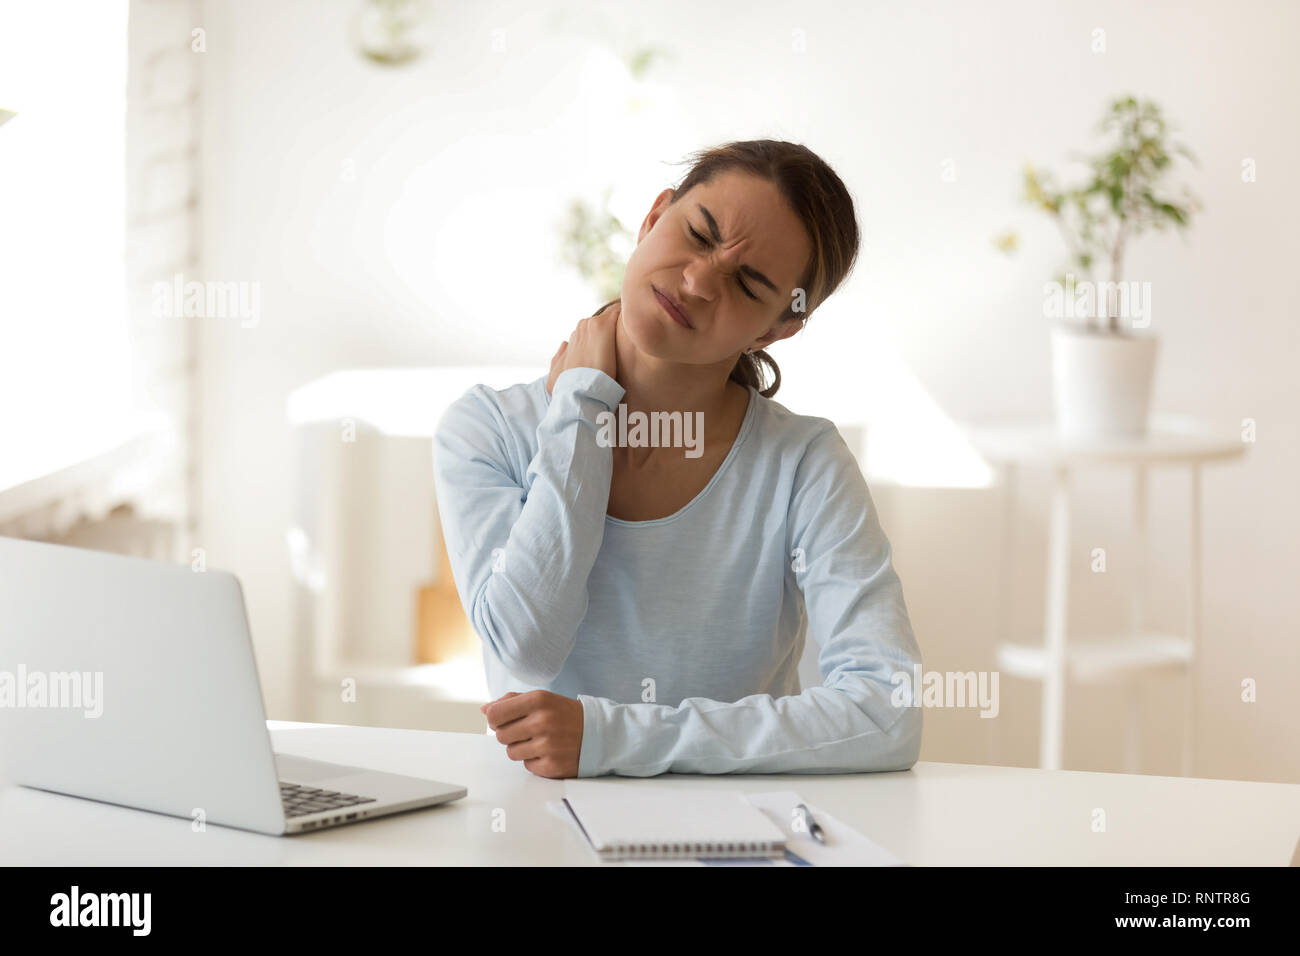 Las hembras jóvenes sufre de dolor de cuello en el lugar de trabajo Foto de stock